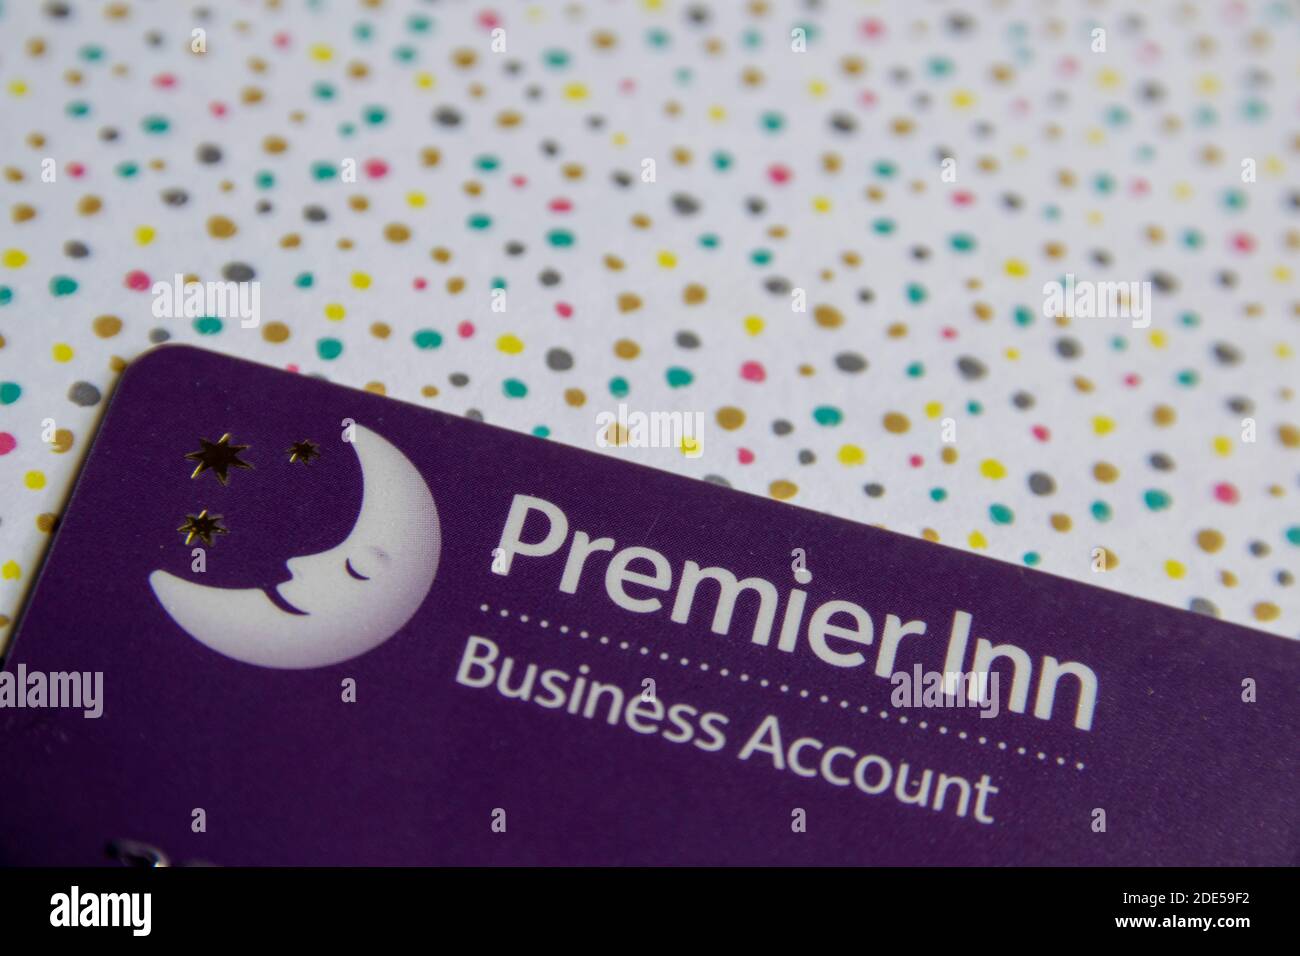 Durham, Großbritannien - 28. Mai 2020: Premier Inn Business Account Card. Mit der Karte können Personen, die geschäftlich unterwegs sind, ein Zimmer und Mahlzeiten ihrem Unternehmen in Rechnung stellen. Stockfoto